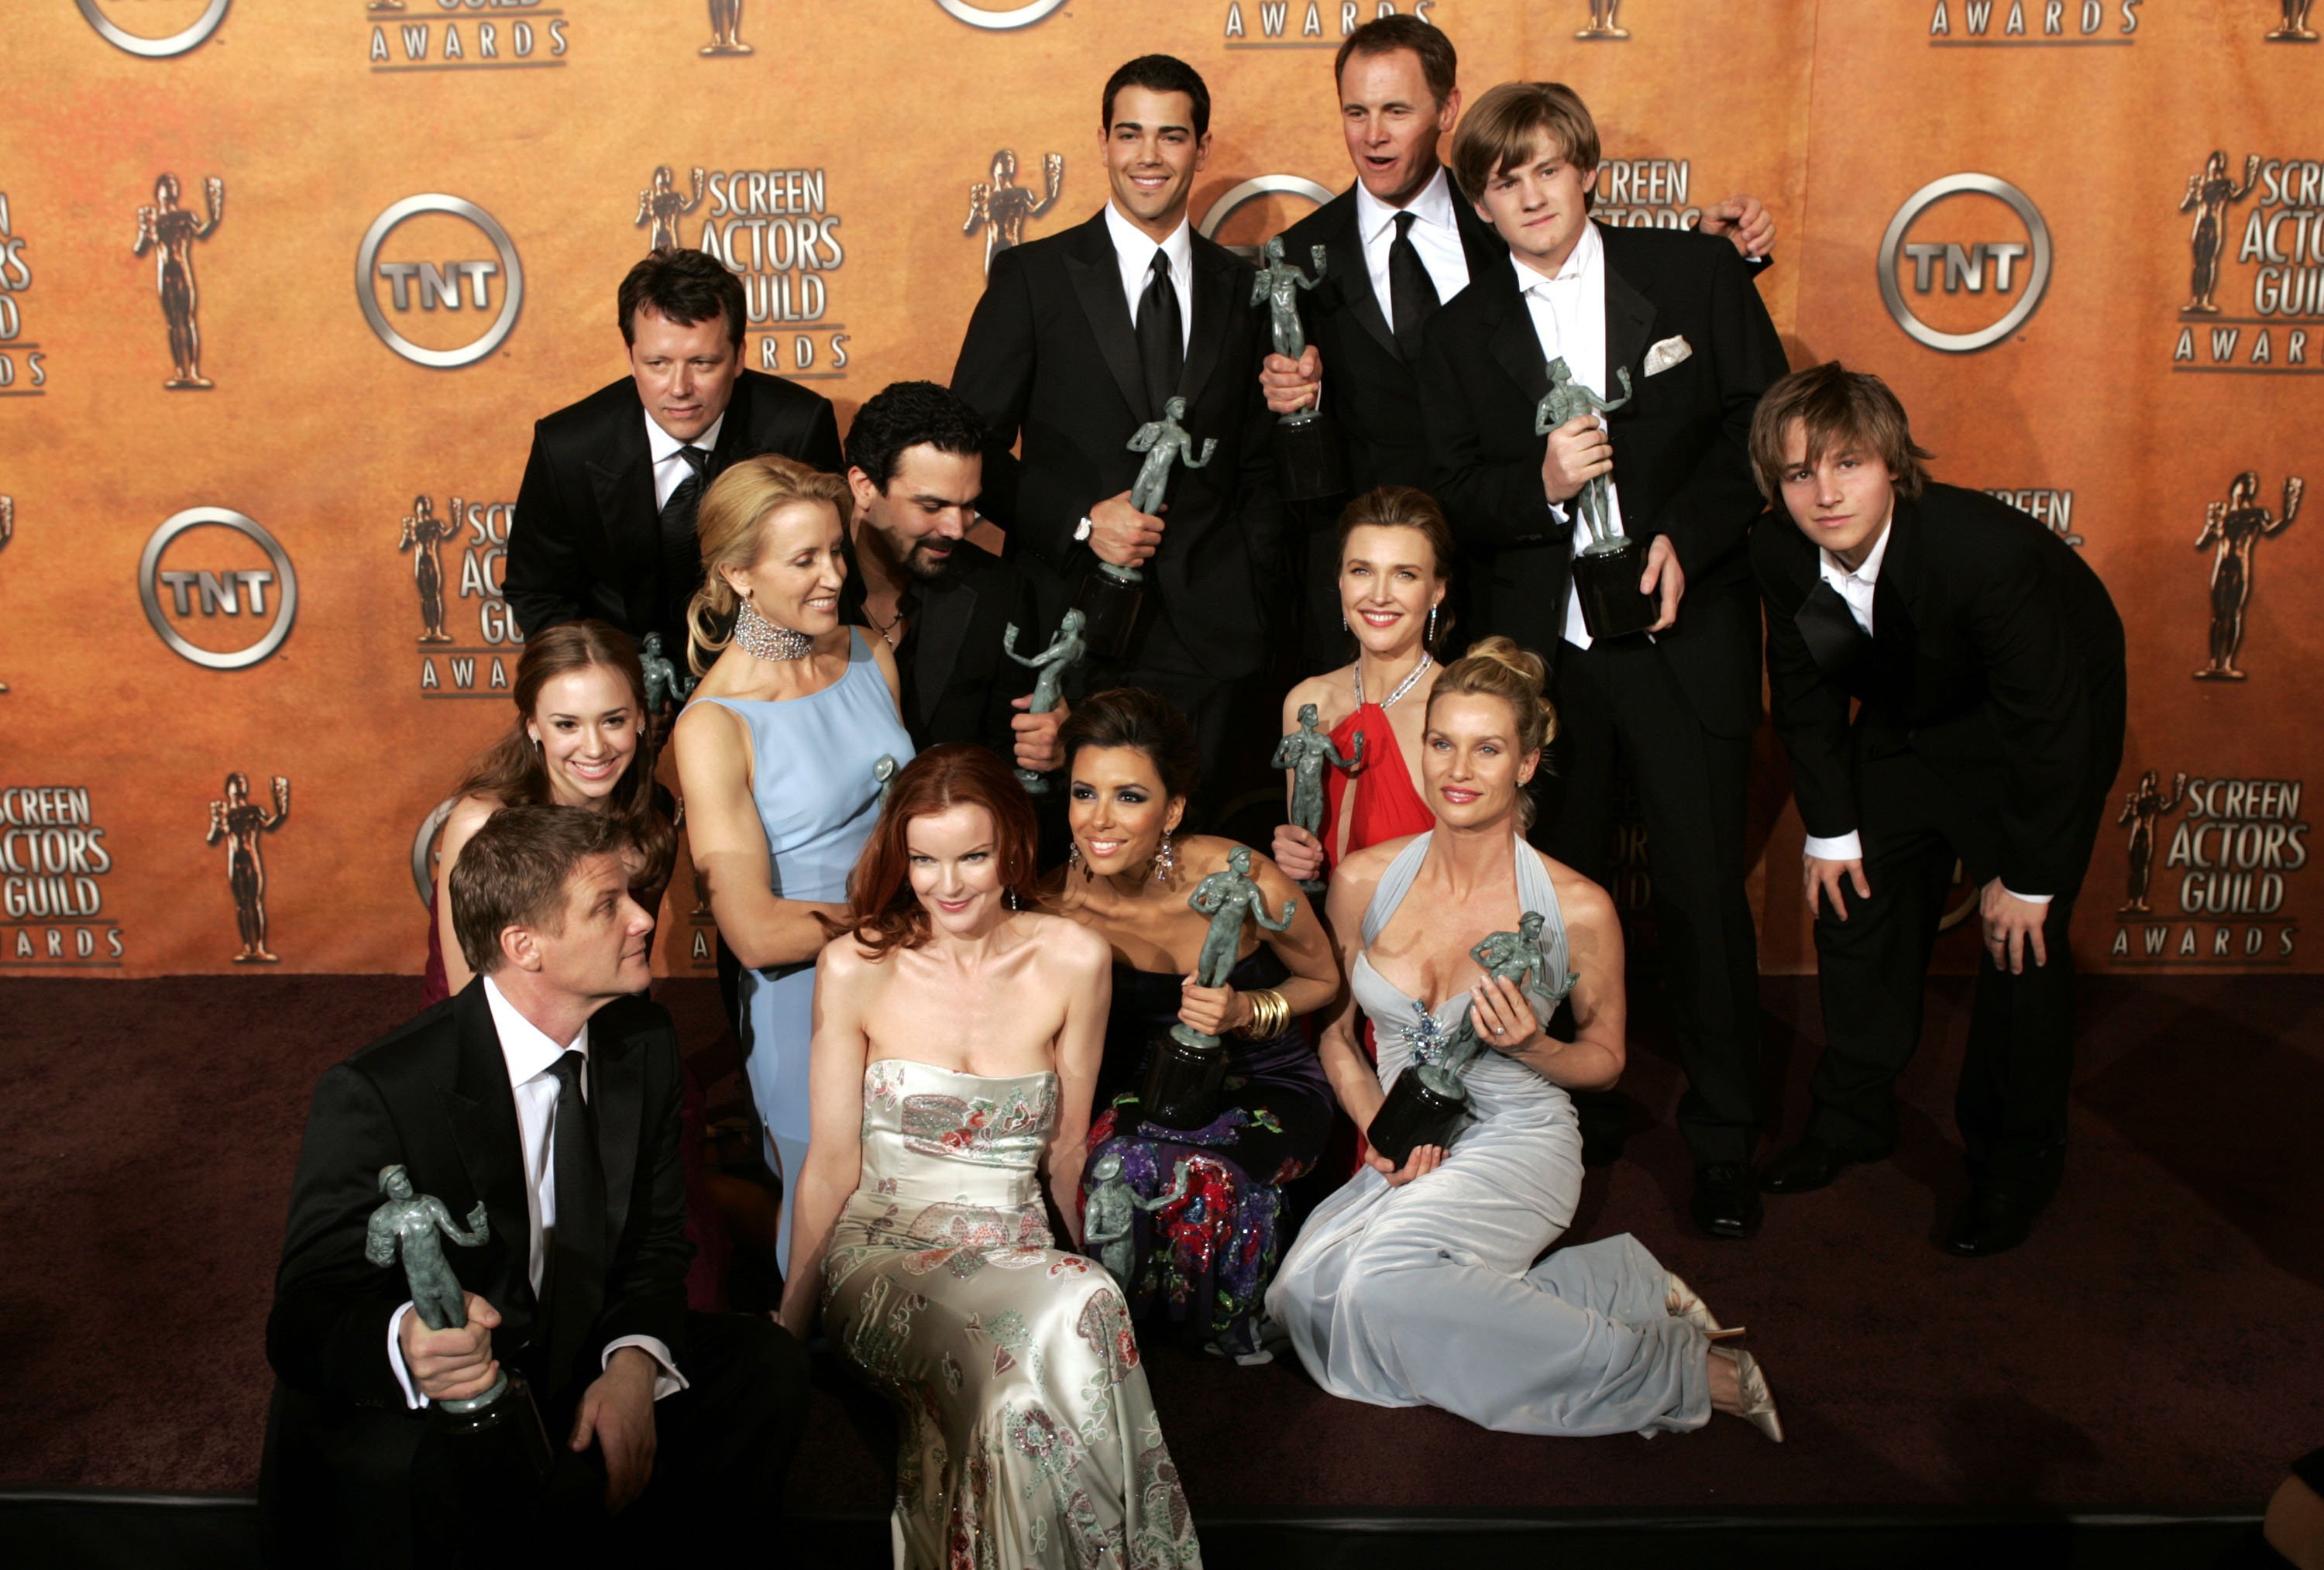 Die Darsteller von "Desperate Housewives" posieren mit ihren SAG Awards bei den 11th Annual SAG Awards, 2005 | Quelle: Getty Images